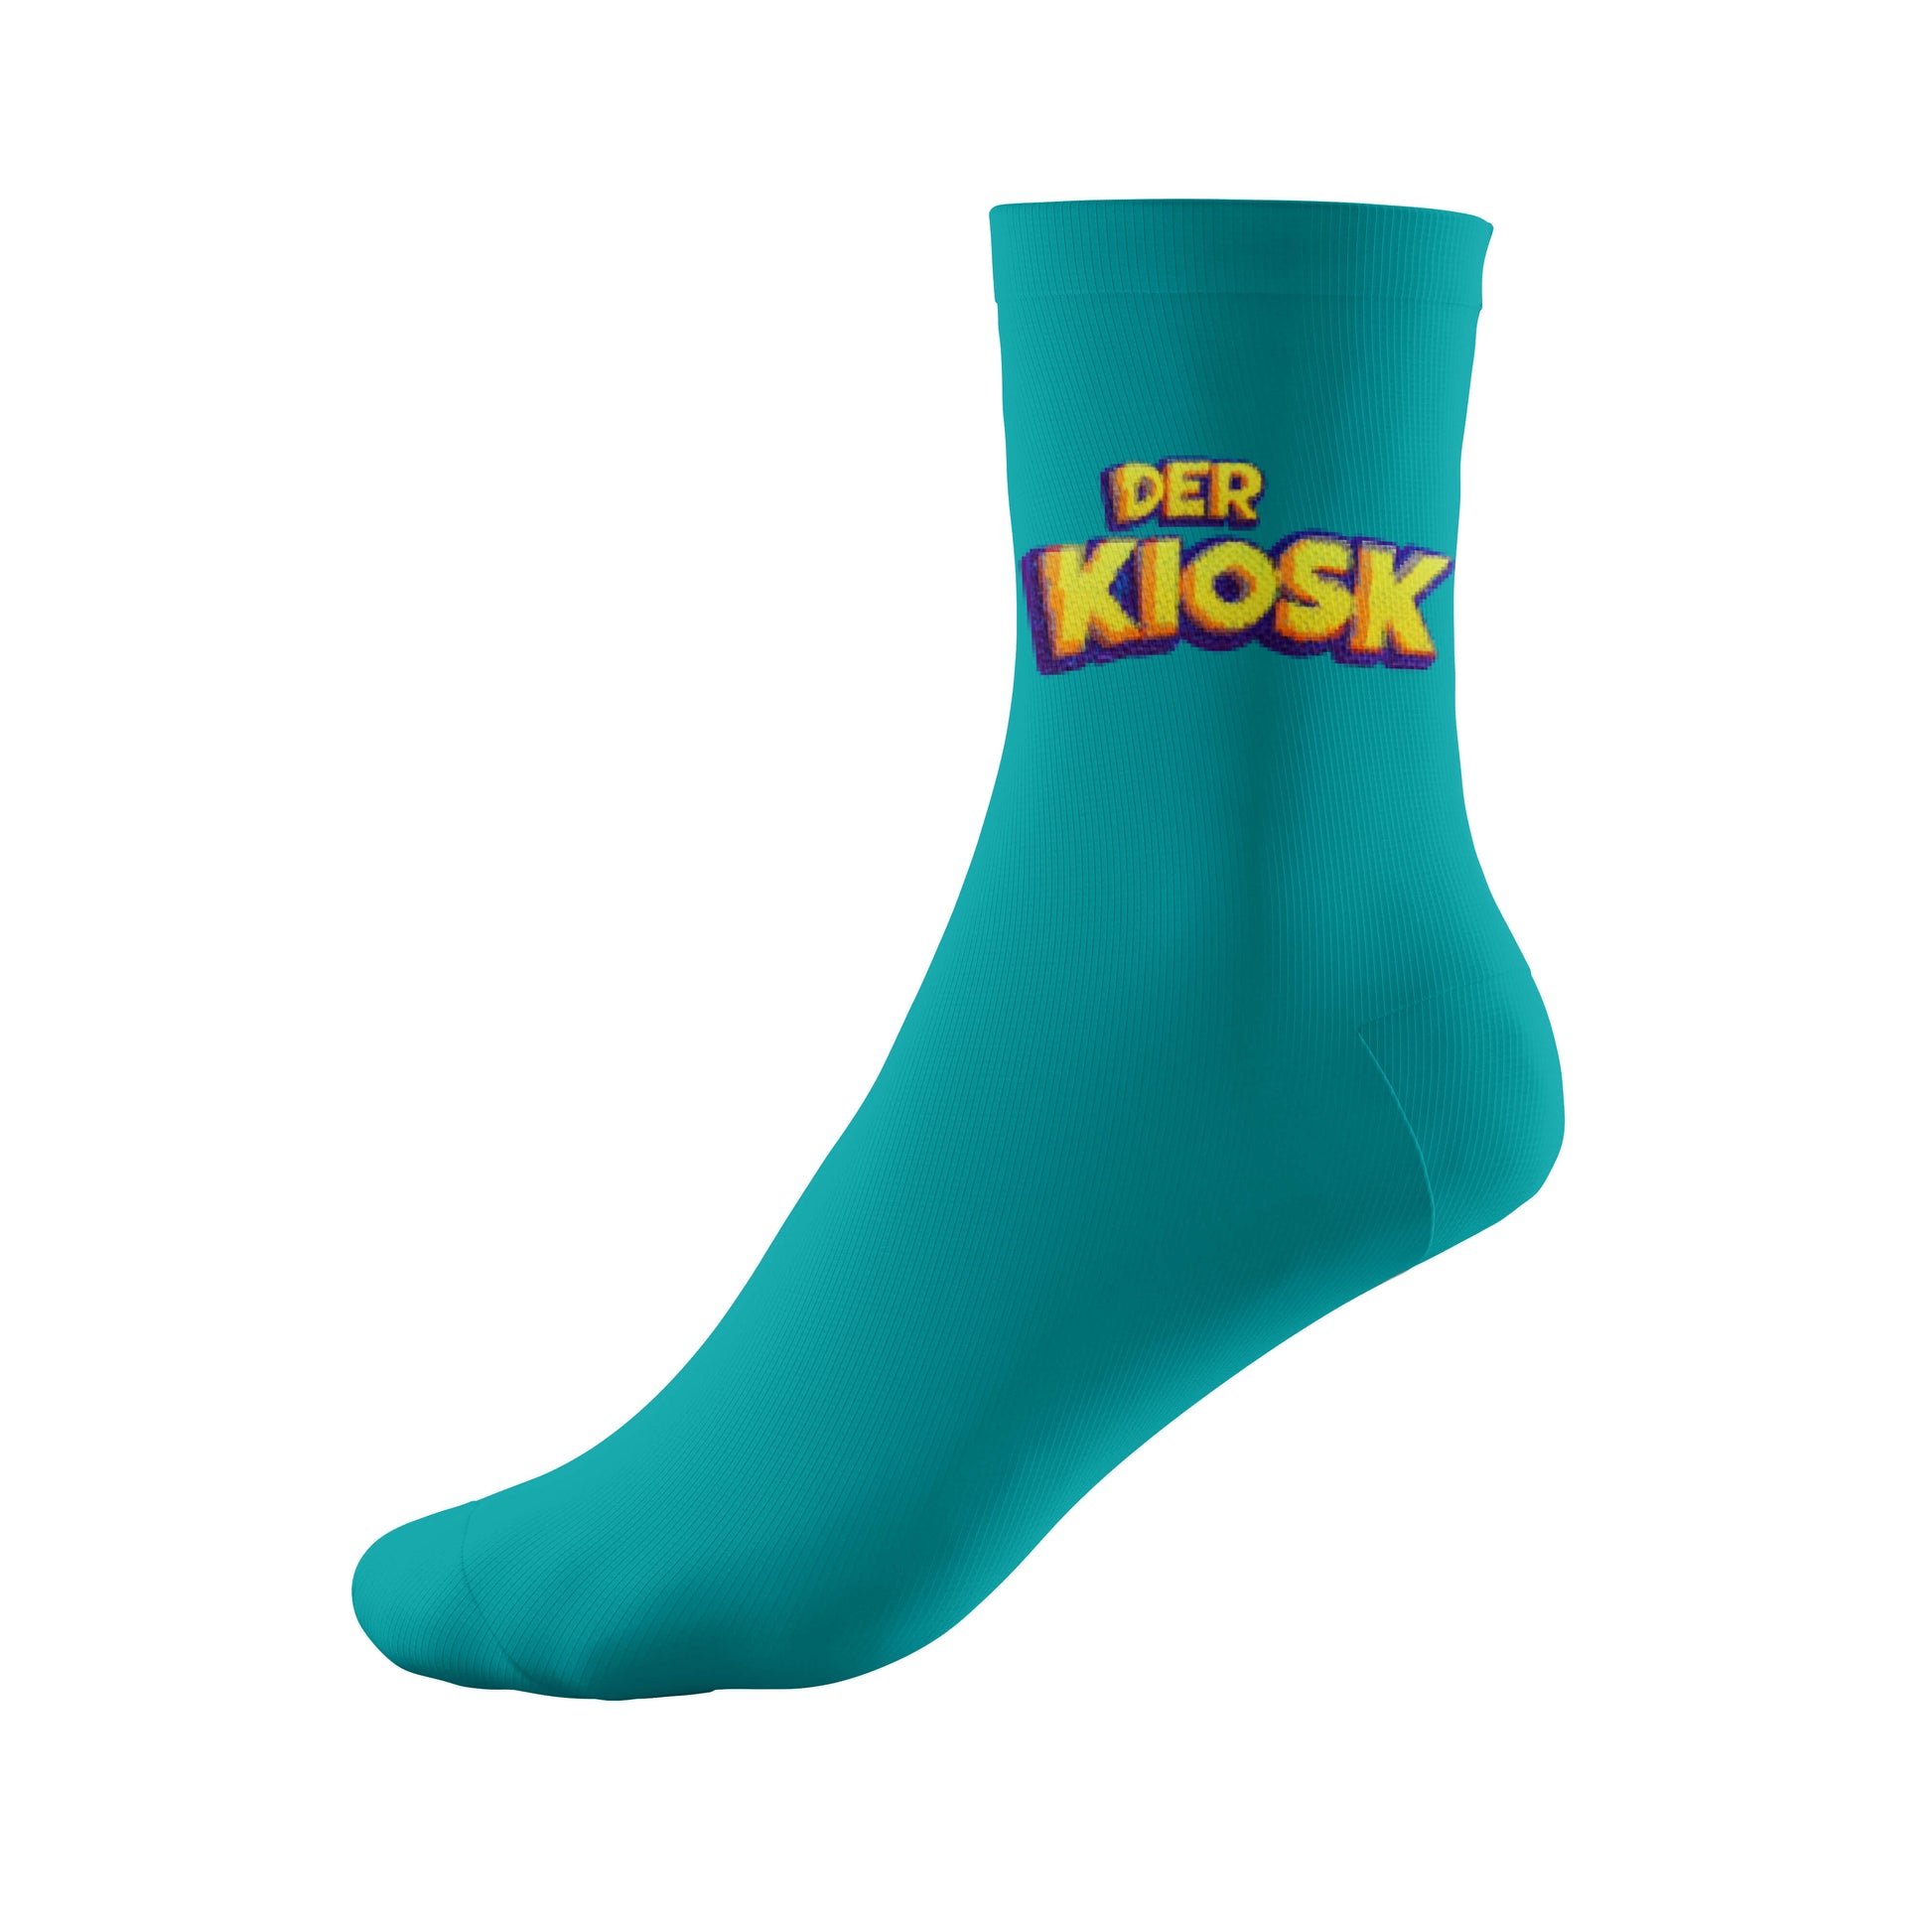 DER KIOSK Socken - Mint - Der Kiosk - Offiziell